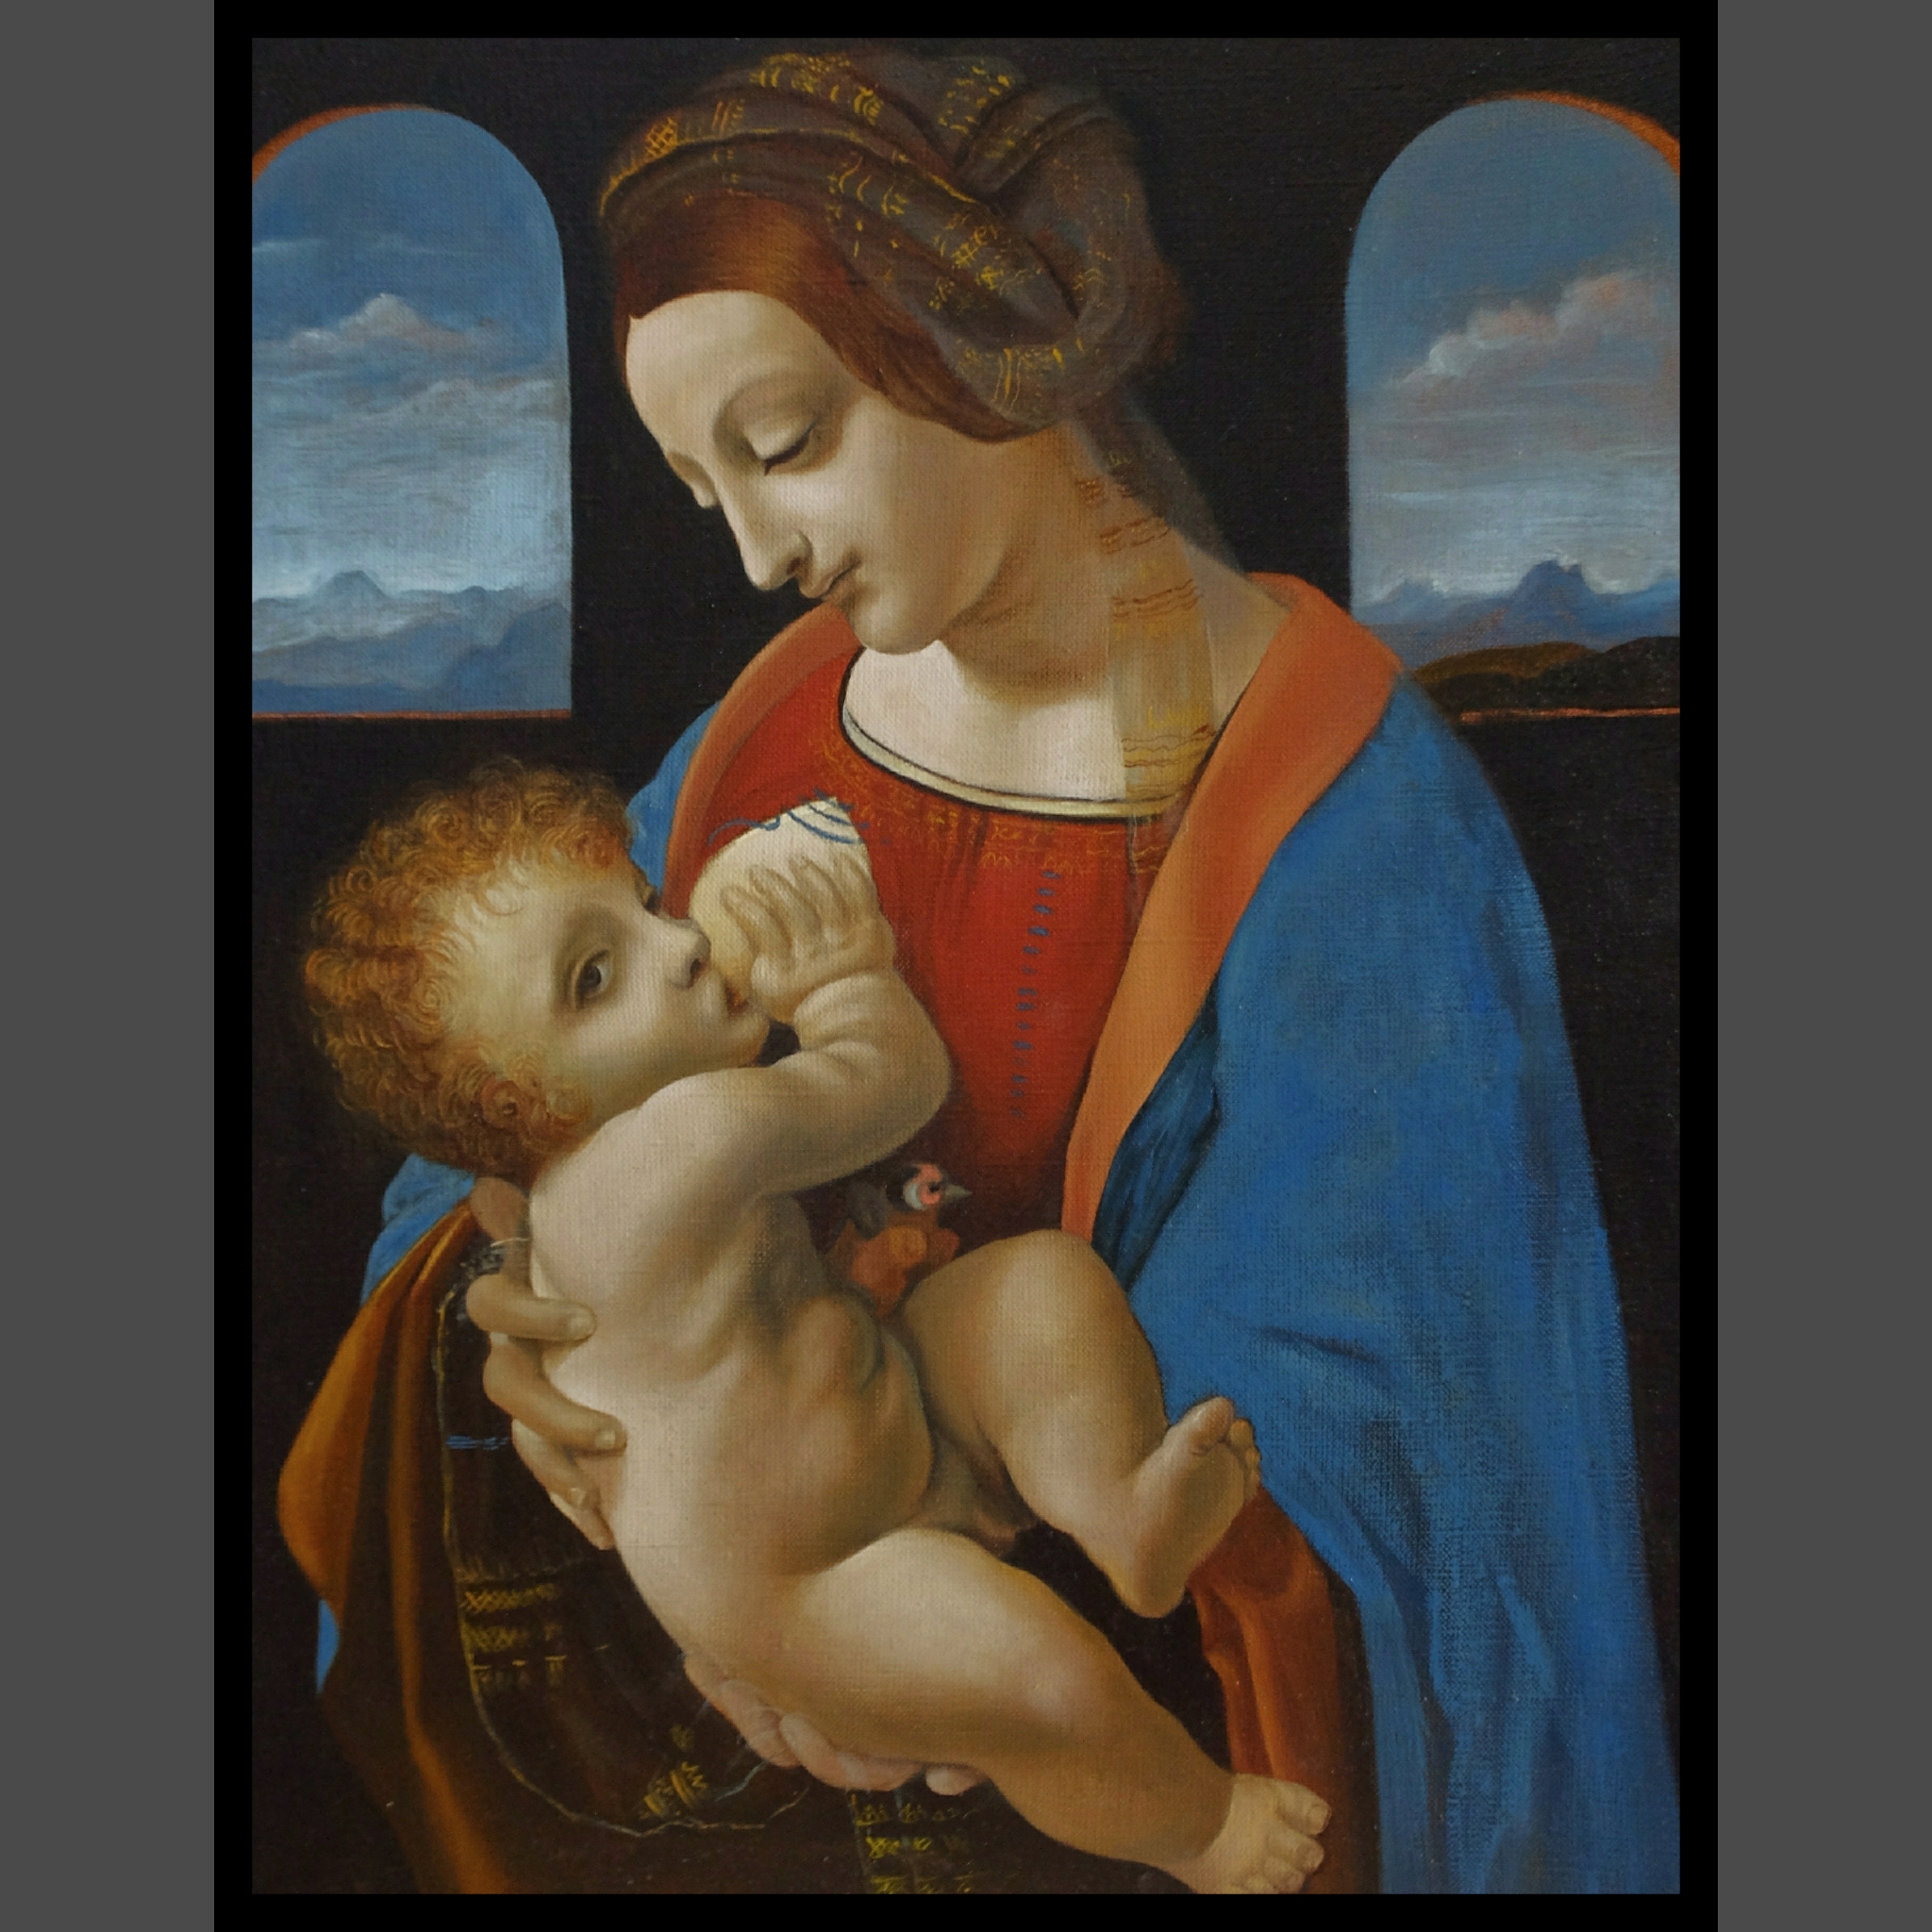 Изображение мадонны с младенцем. Мадонна Литта. Картина да Винчи Мадонна Литта. Мадонна с младенцем Леонардо да Винчи. Леонардо да Винчи «Мадонна с младенцем» («Мадонна Литта») (1490).